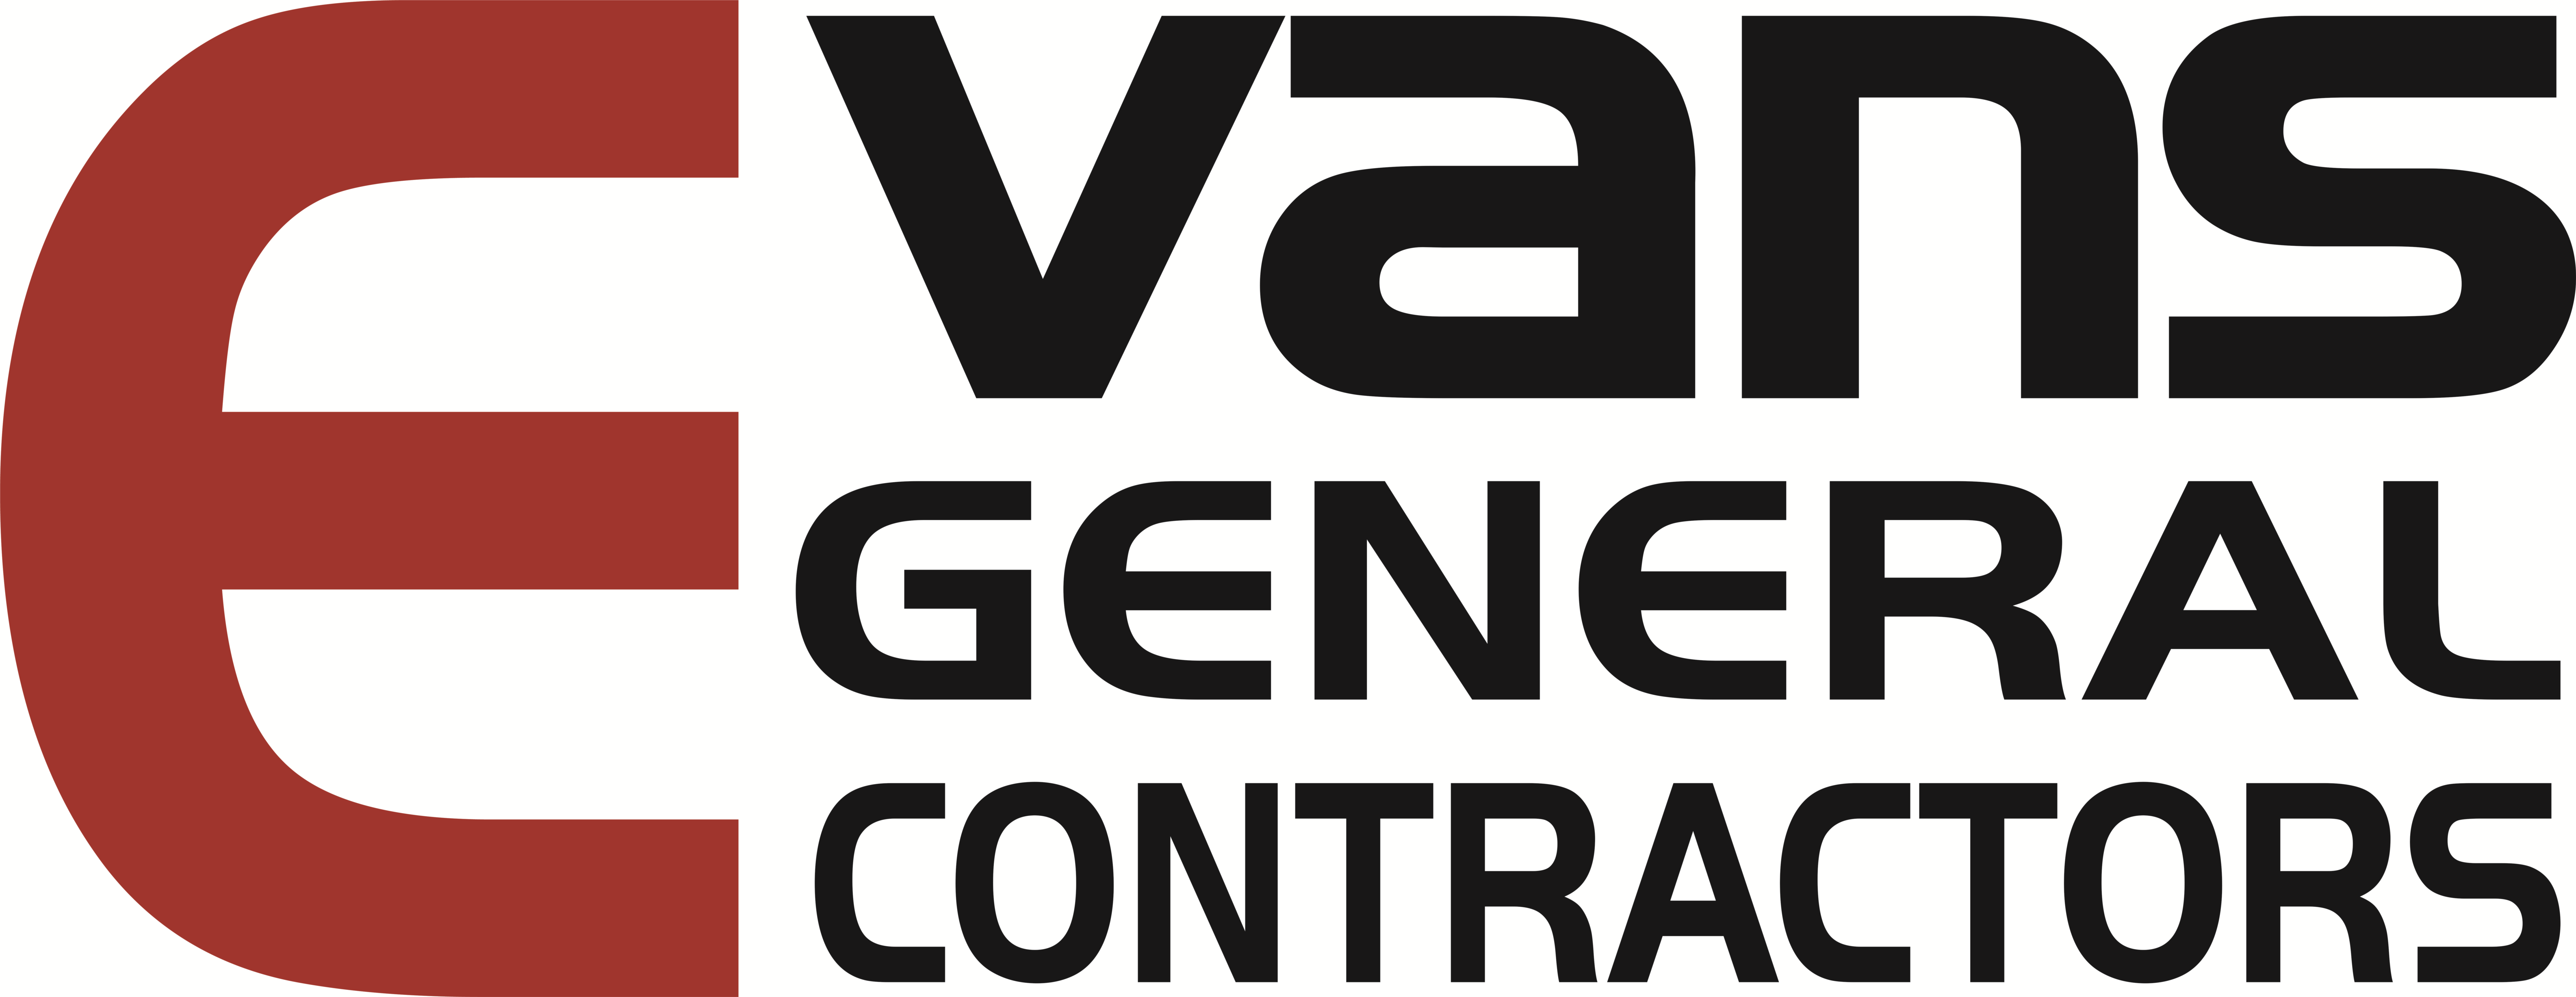 Evans General Contractors, LLC logo